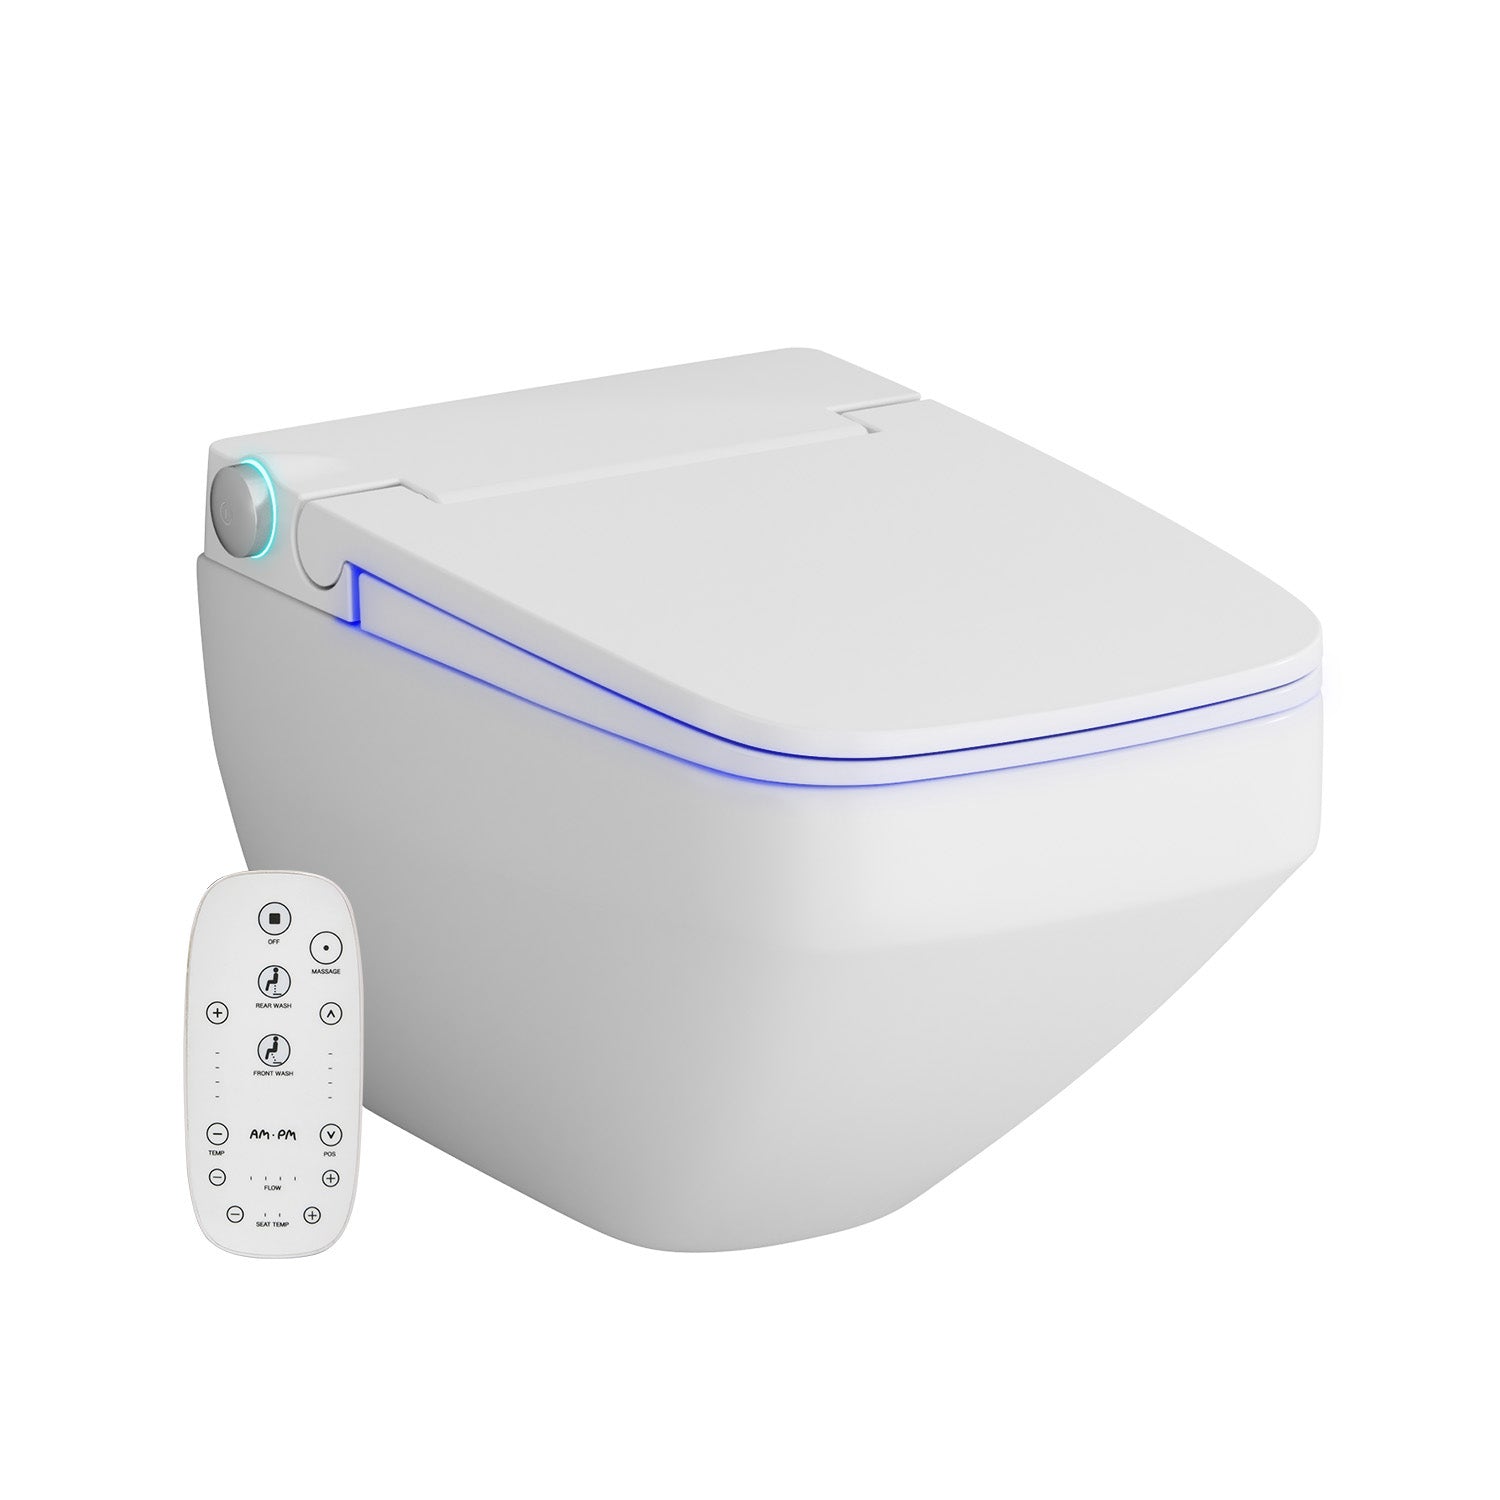 CCCPA1700SC Inspire V2.0 FlashClean Wand-WC spülrandlos mit TouchReel elektronischem E-Sitz, Sitzheizung und Beleuchtung